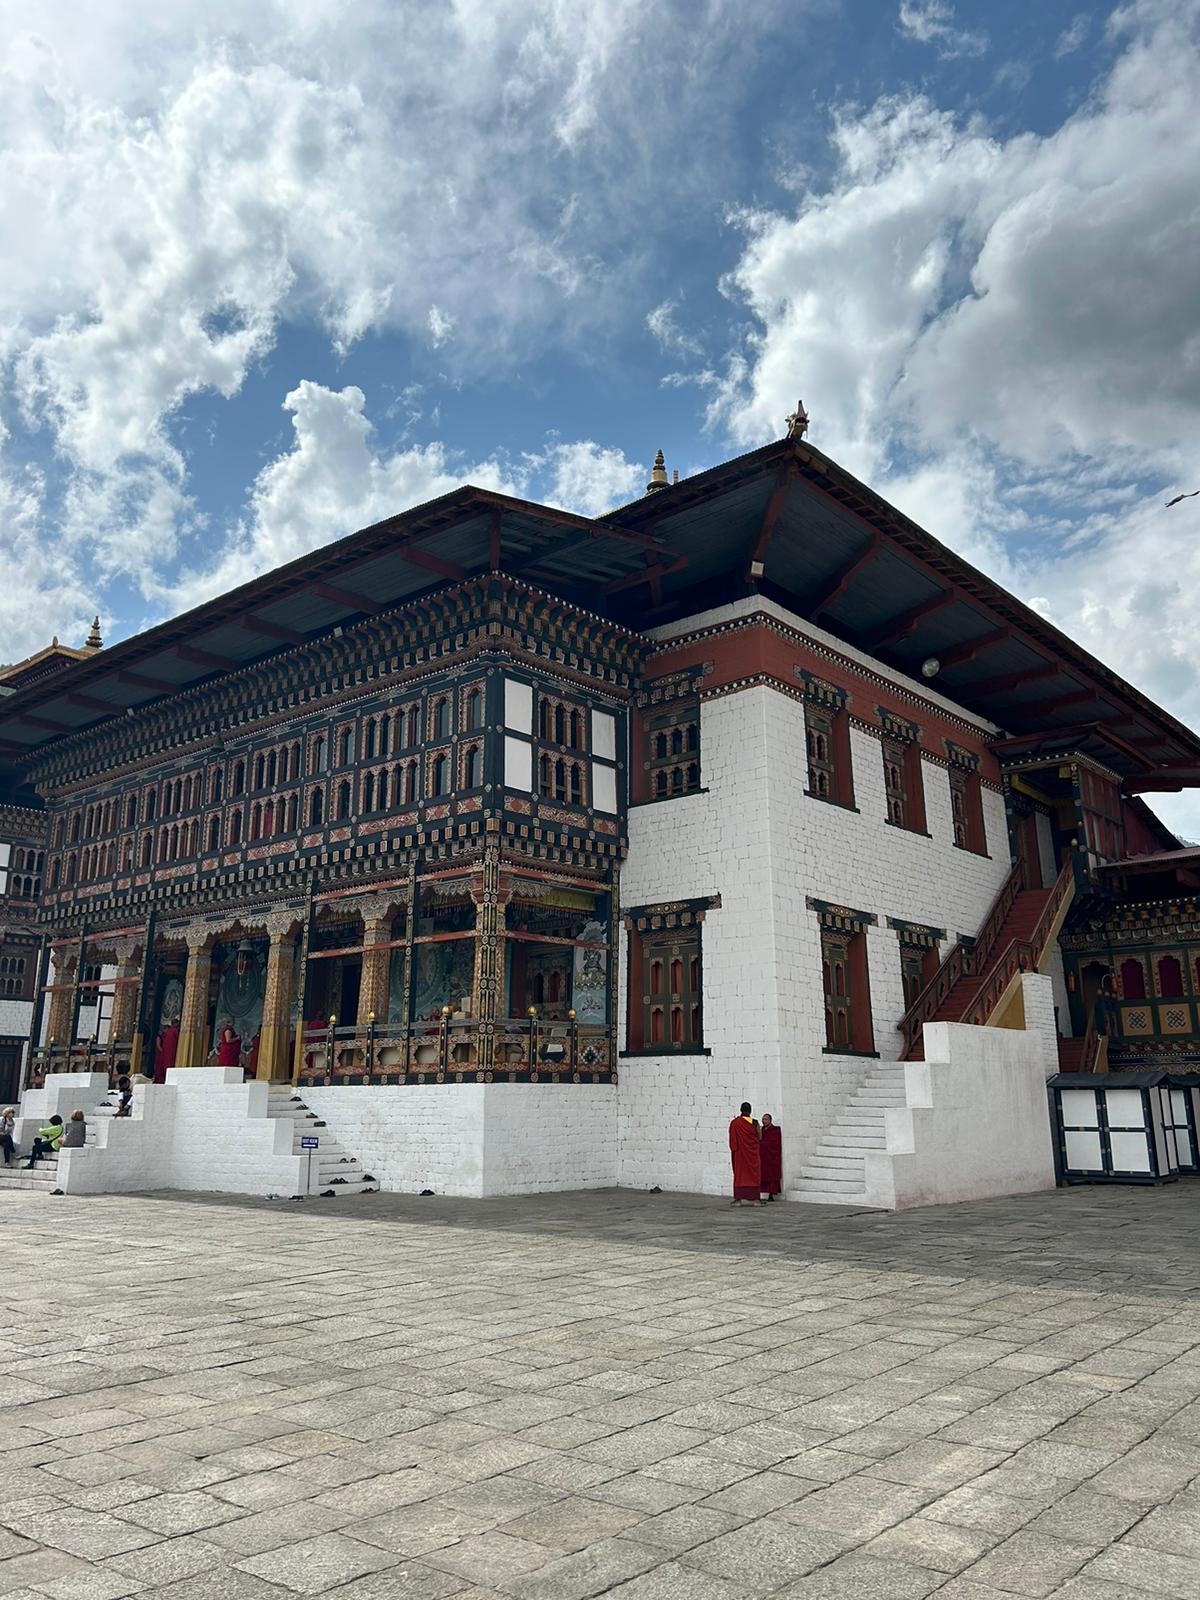 Thimpu Fortress in Bhutan